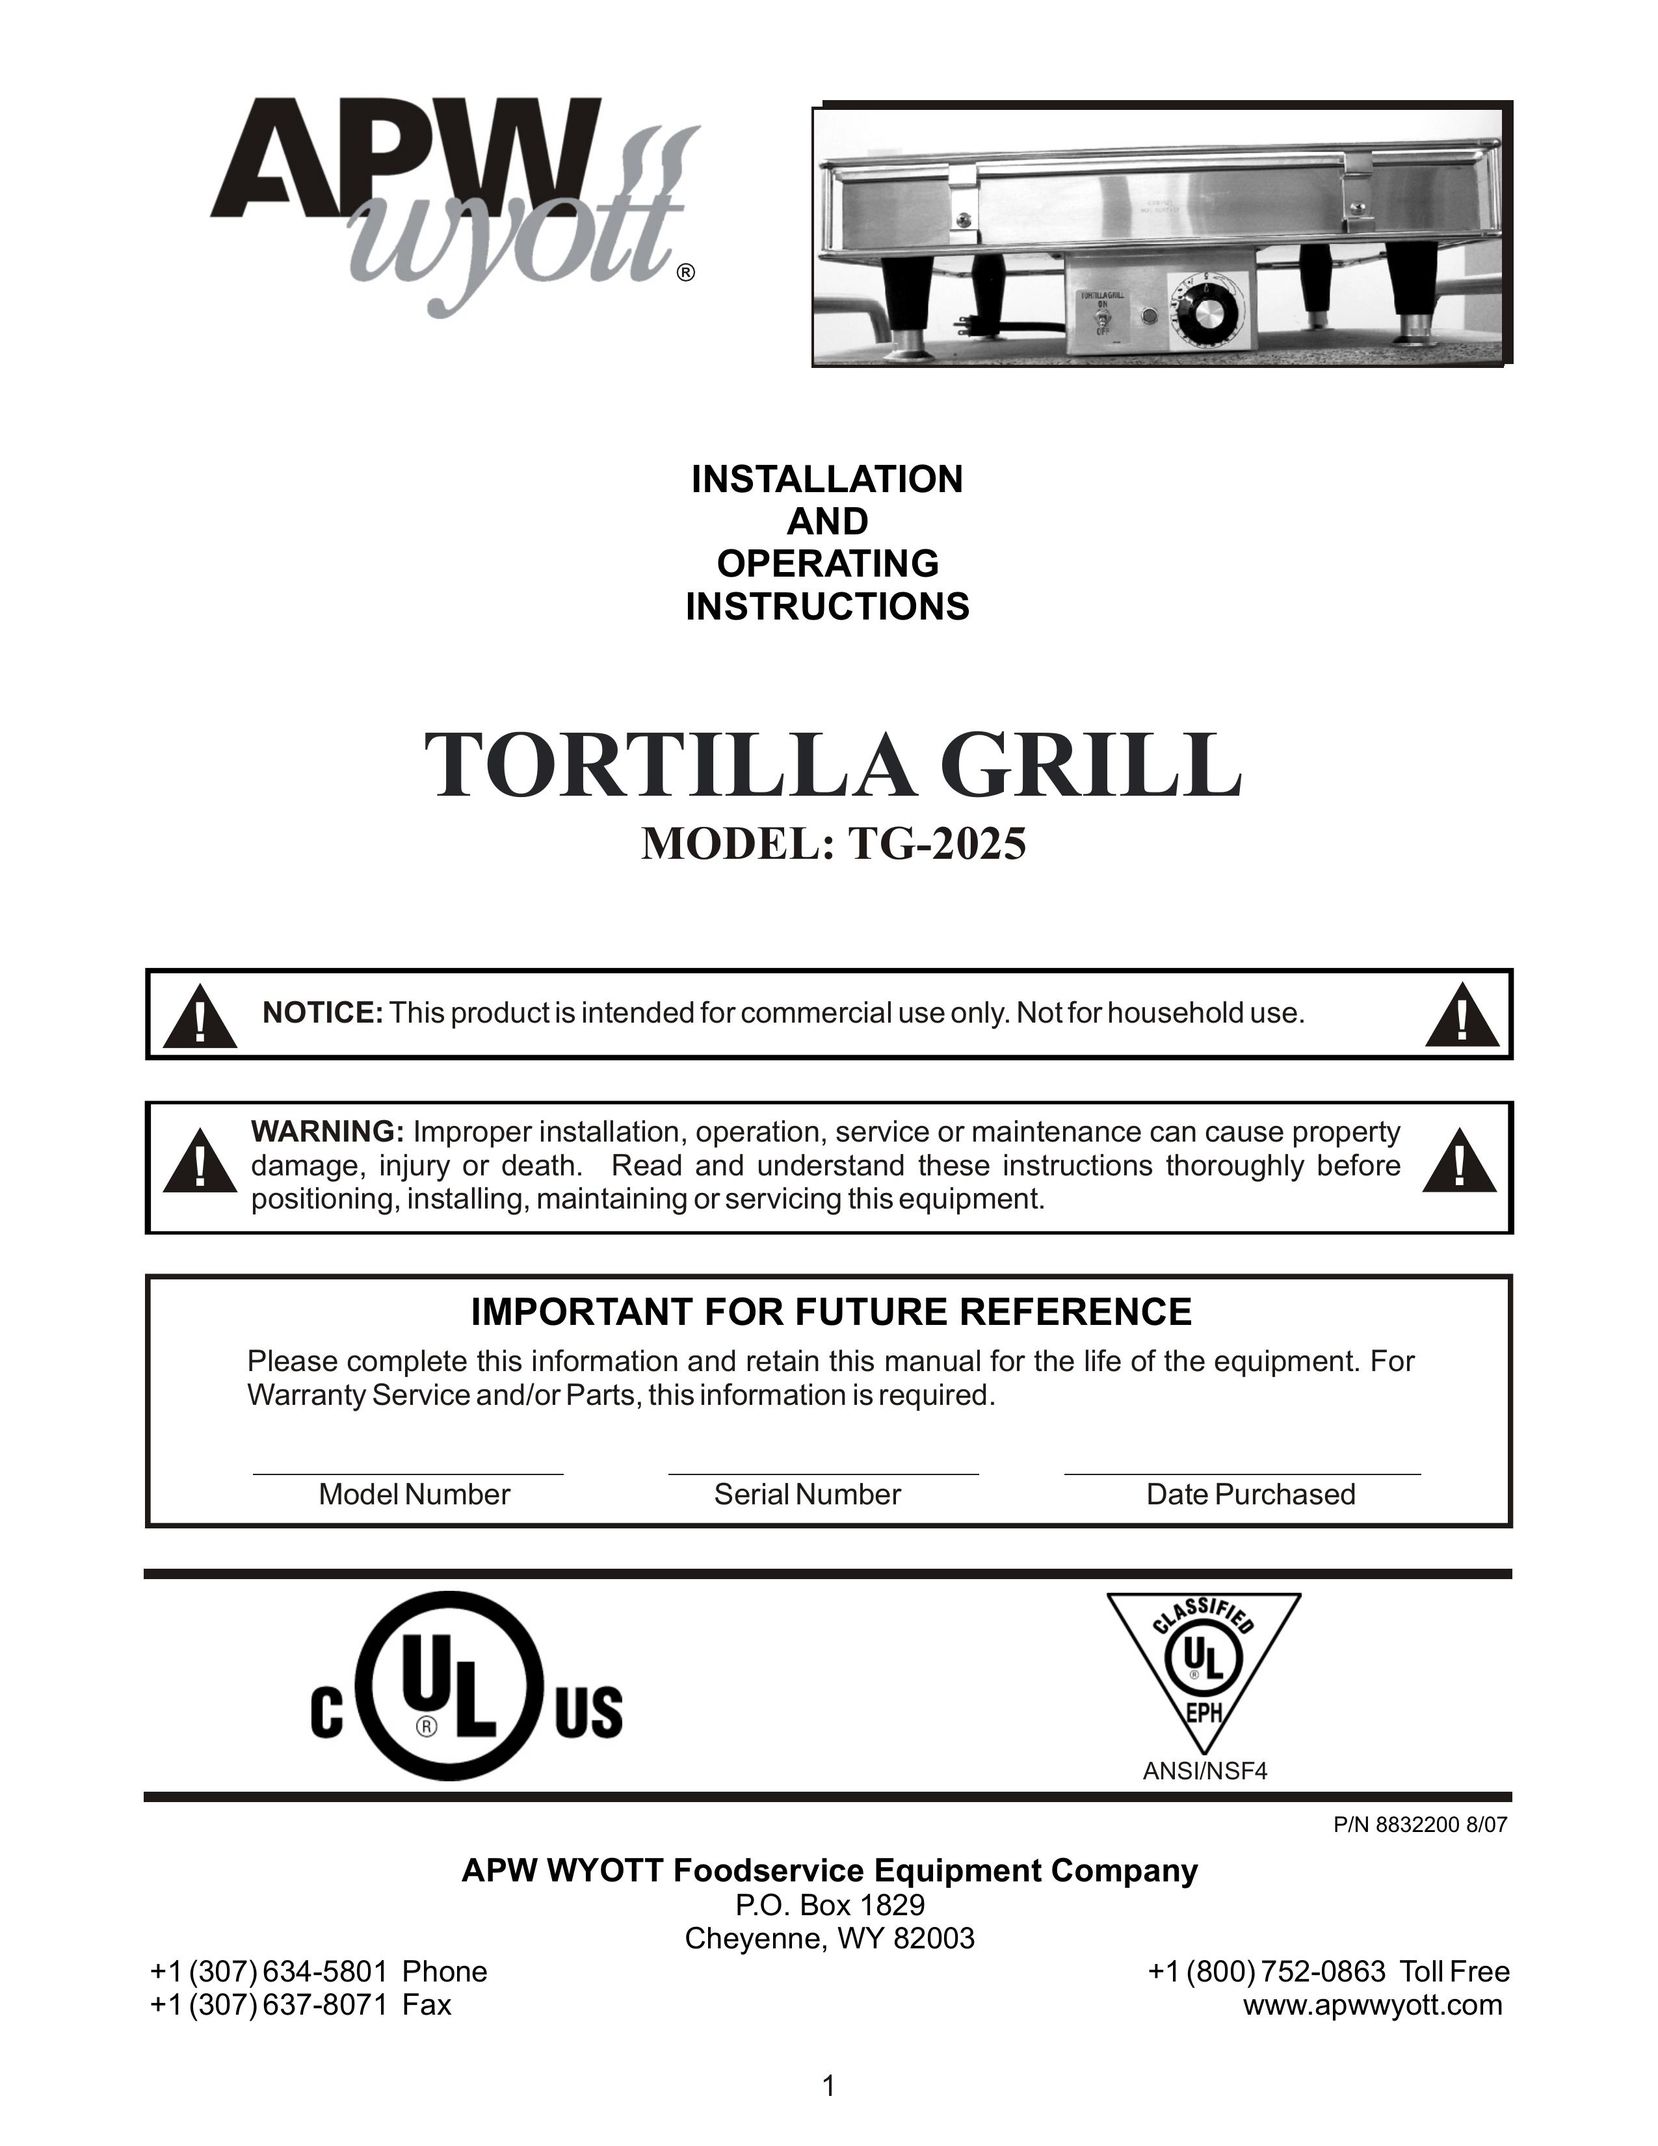 APW Wyott TG-2025 Kitchen Grill User Manual